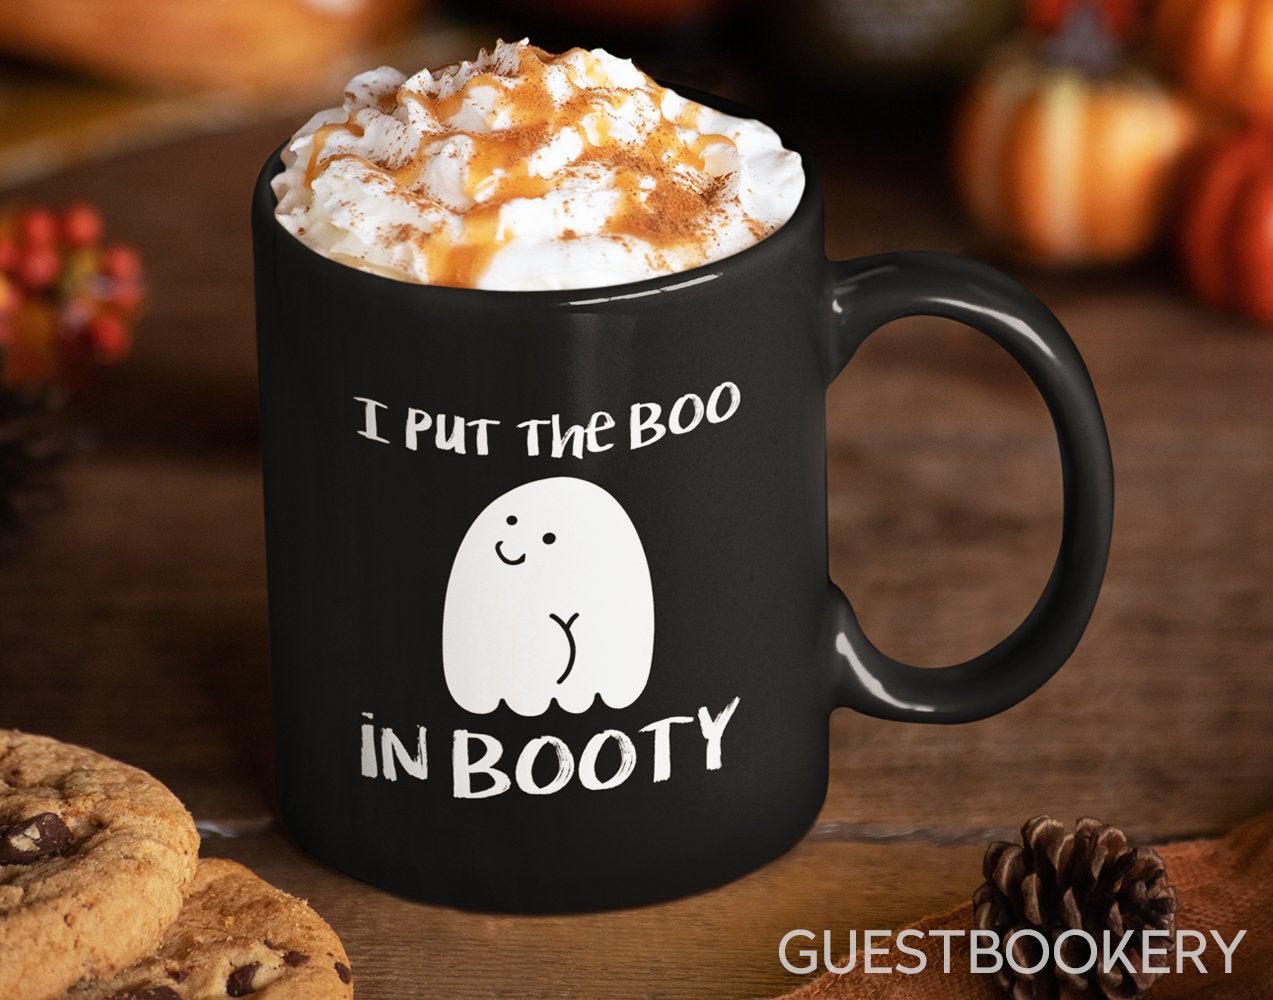 I Put the Boo in Booty Mug